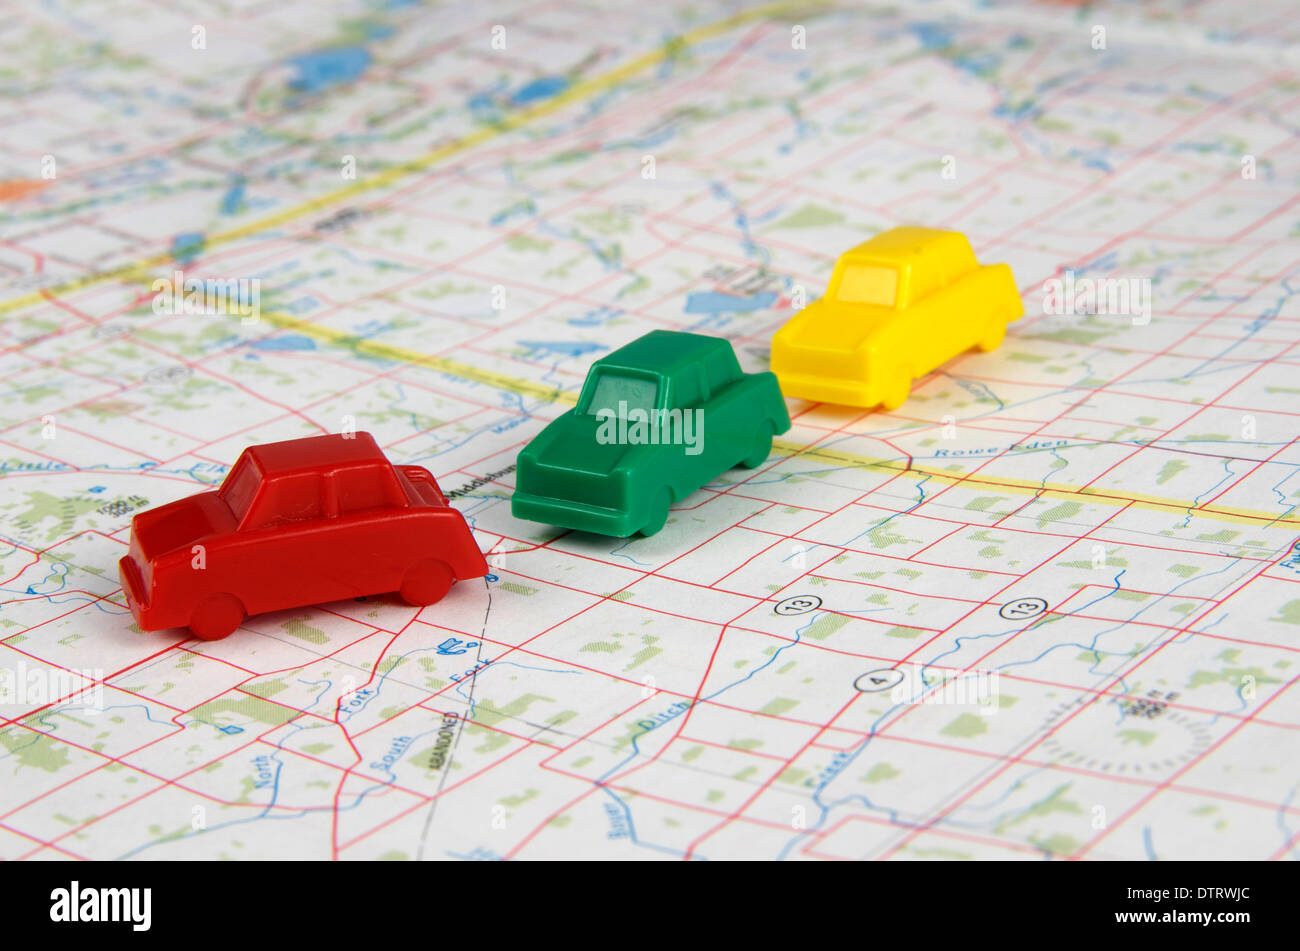 Miniatur-Autos von rot, grün und gelb, die Reisen über eine Karte in einer Fahrgemeinschaft Mode. Stockfoto